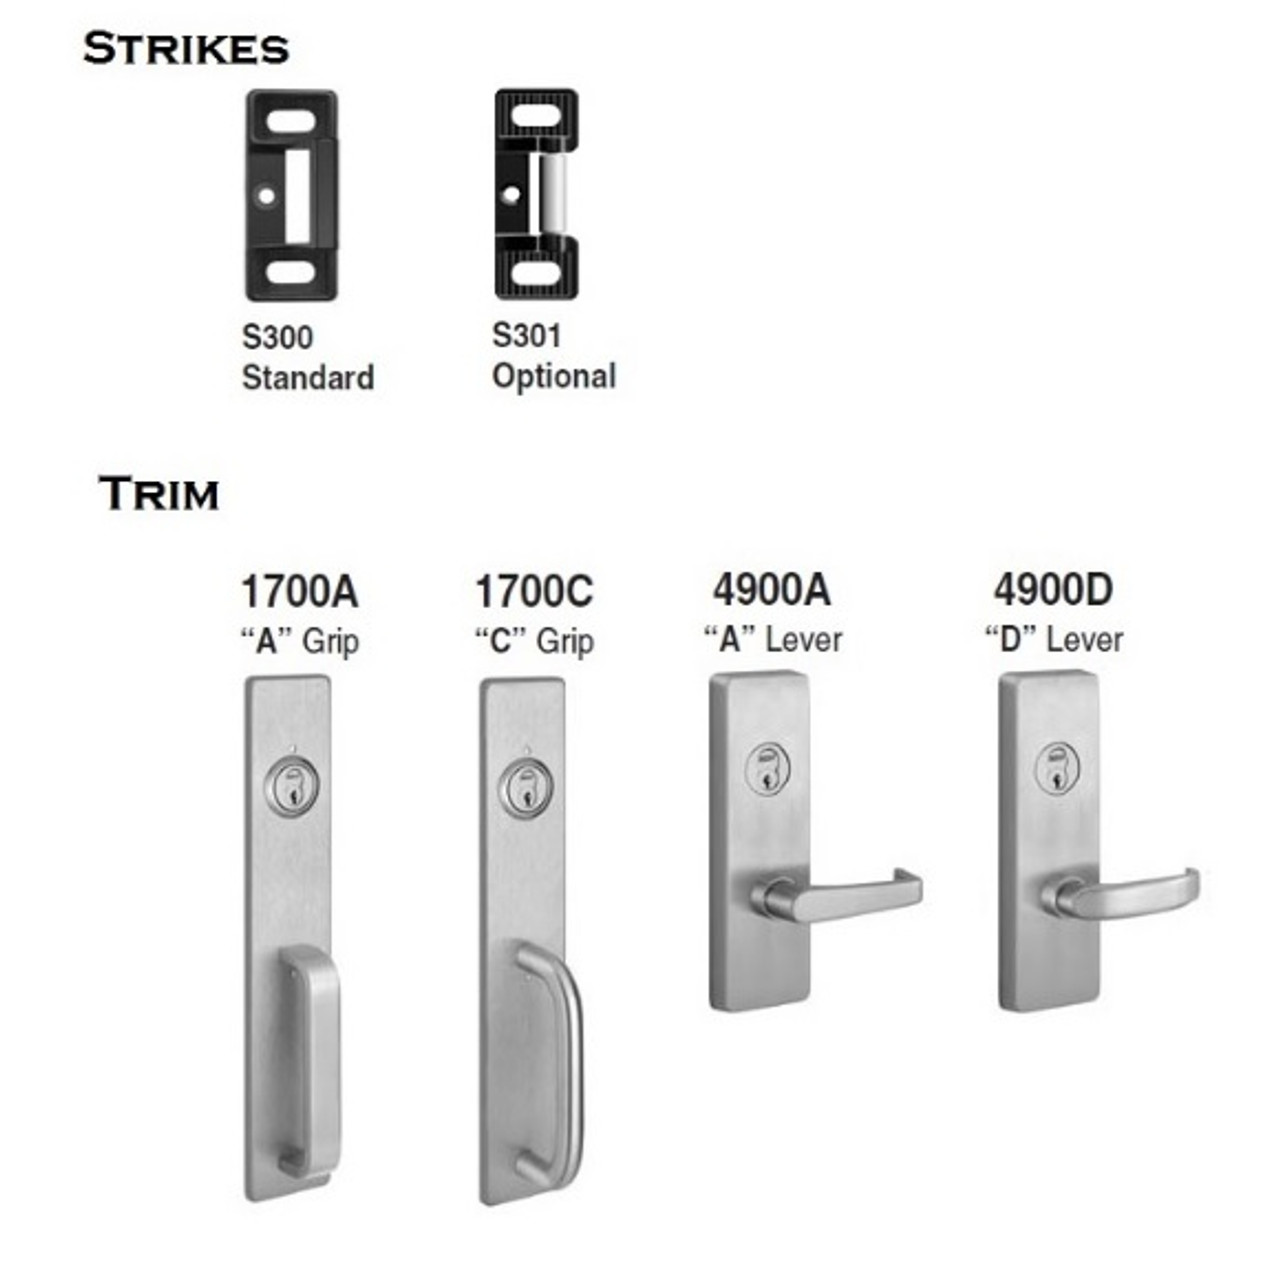 PHI 2908B 630 RHR Apex Series Narrow Stile Trim Key Controls